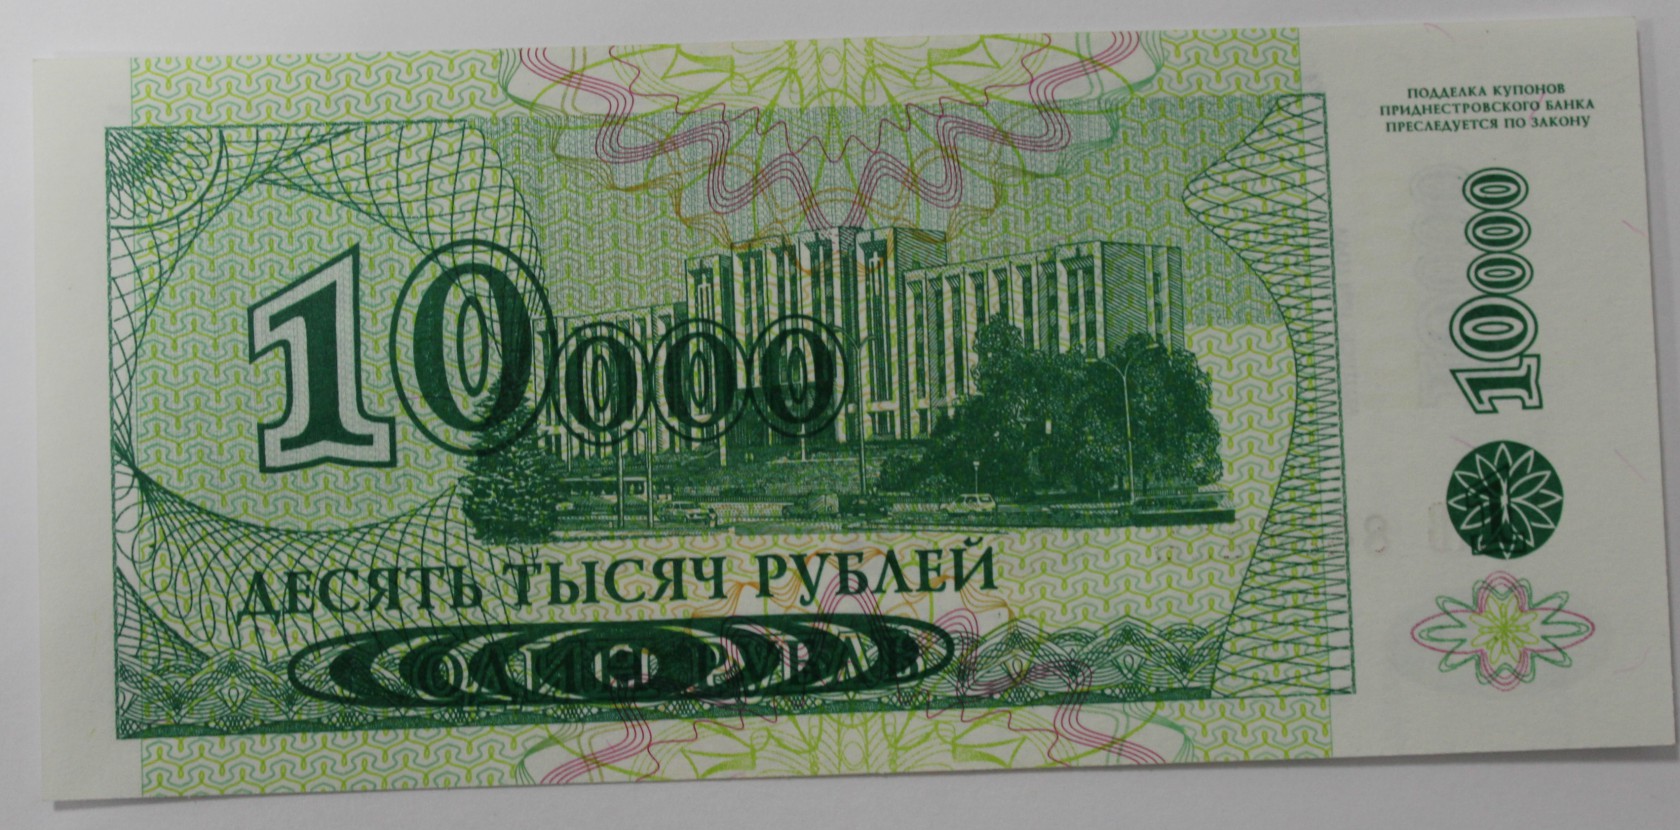 Д3 10 000. 10 Тысяч рублей банкнота. 10 000 Руб купюра. Банкнота 10 000 руб.. 10 000 Рублей купюра.